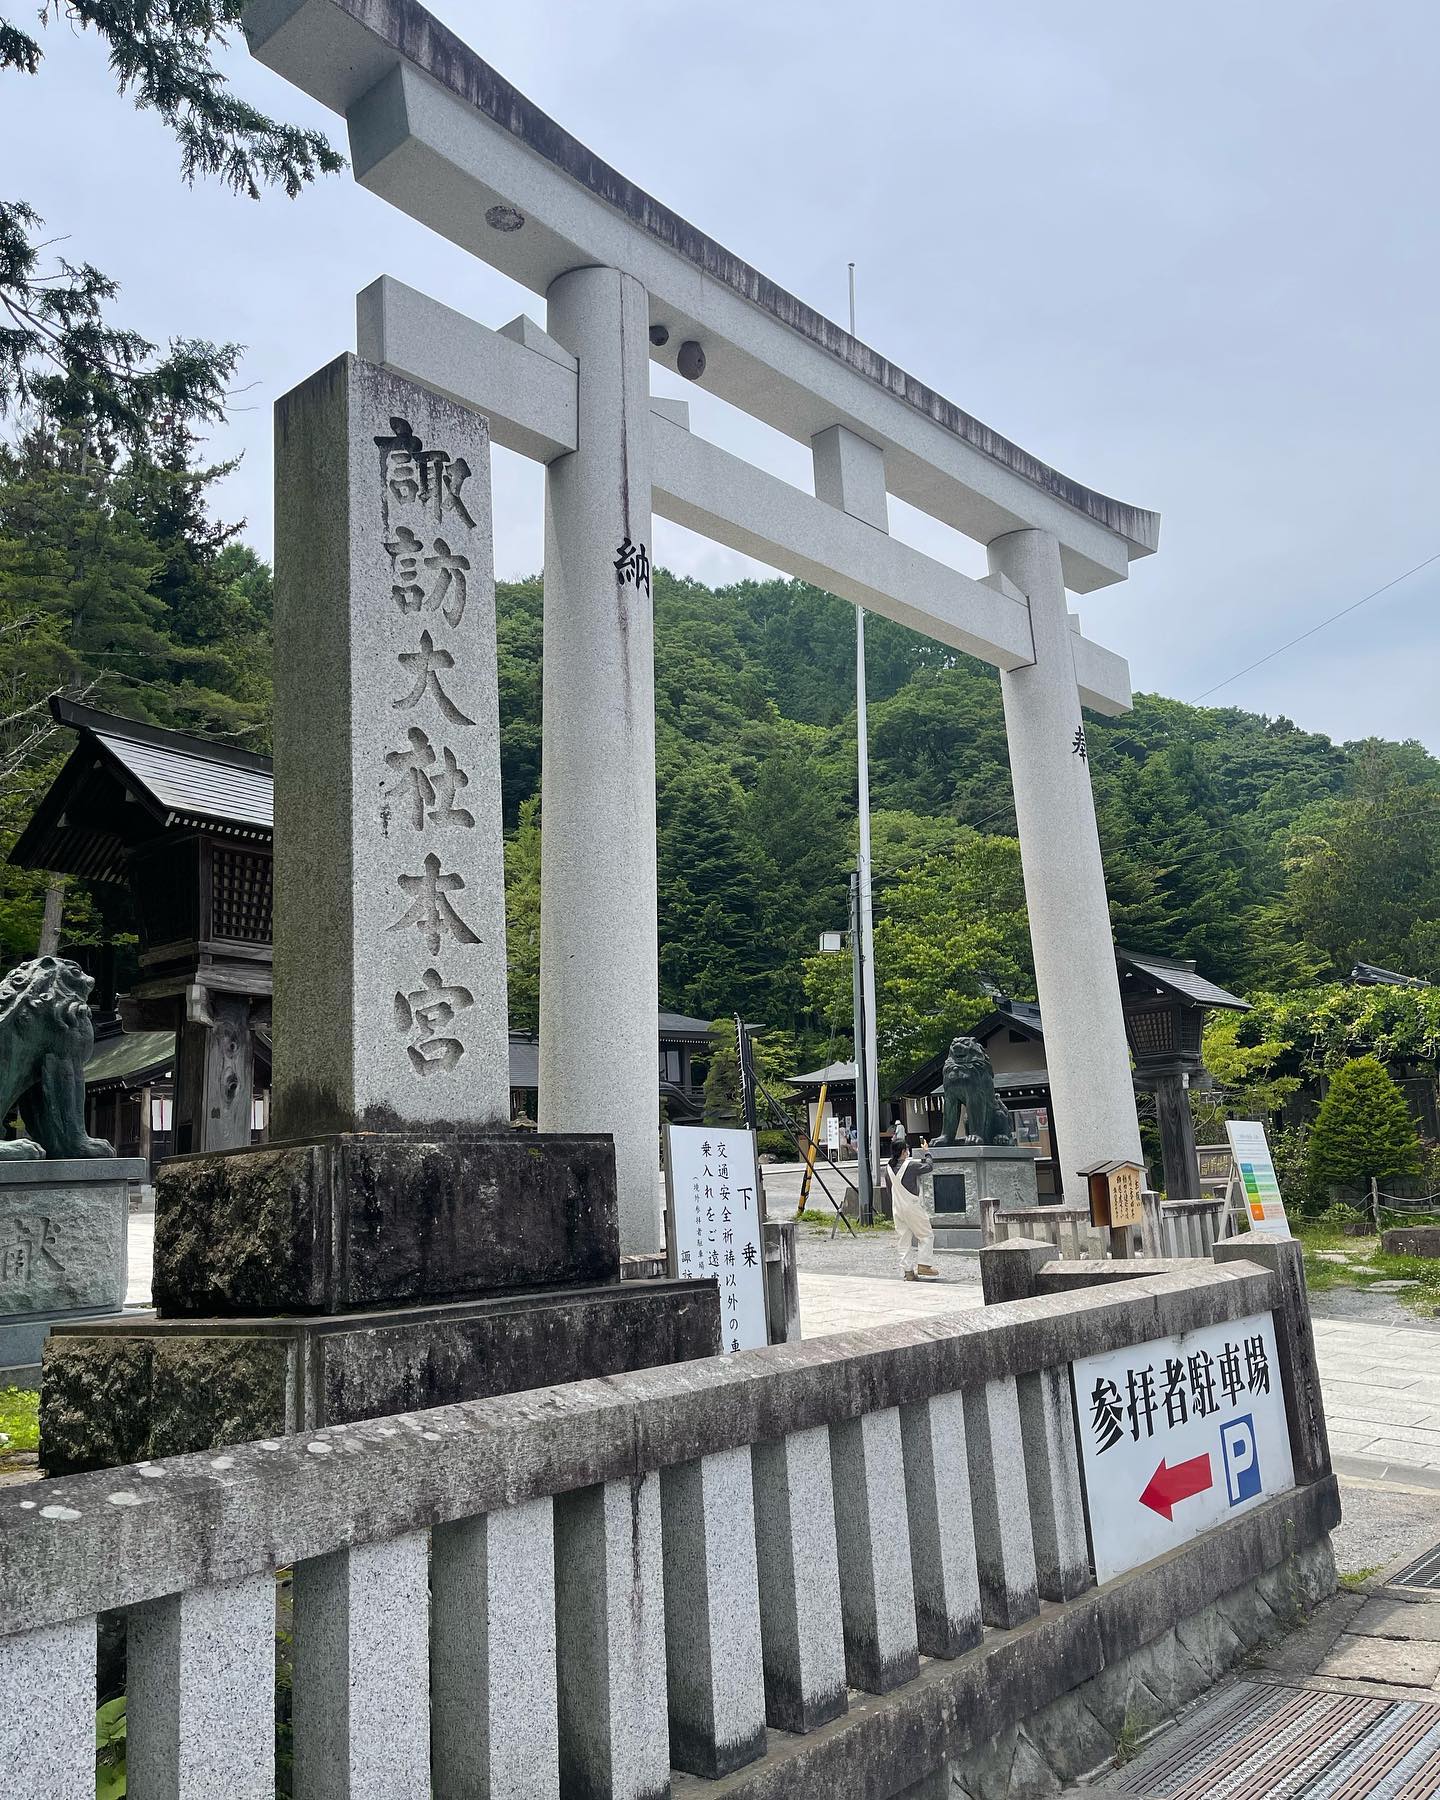 商売繁盛で有名な神社昨日墓参りの帰りに寄ったのが長野県諏訪市にある諏訪大社です。自営業、会社社長さんが多く来る所で商売繁盛にご利益があるそうです。興味がある方は是非！